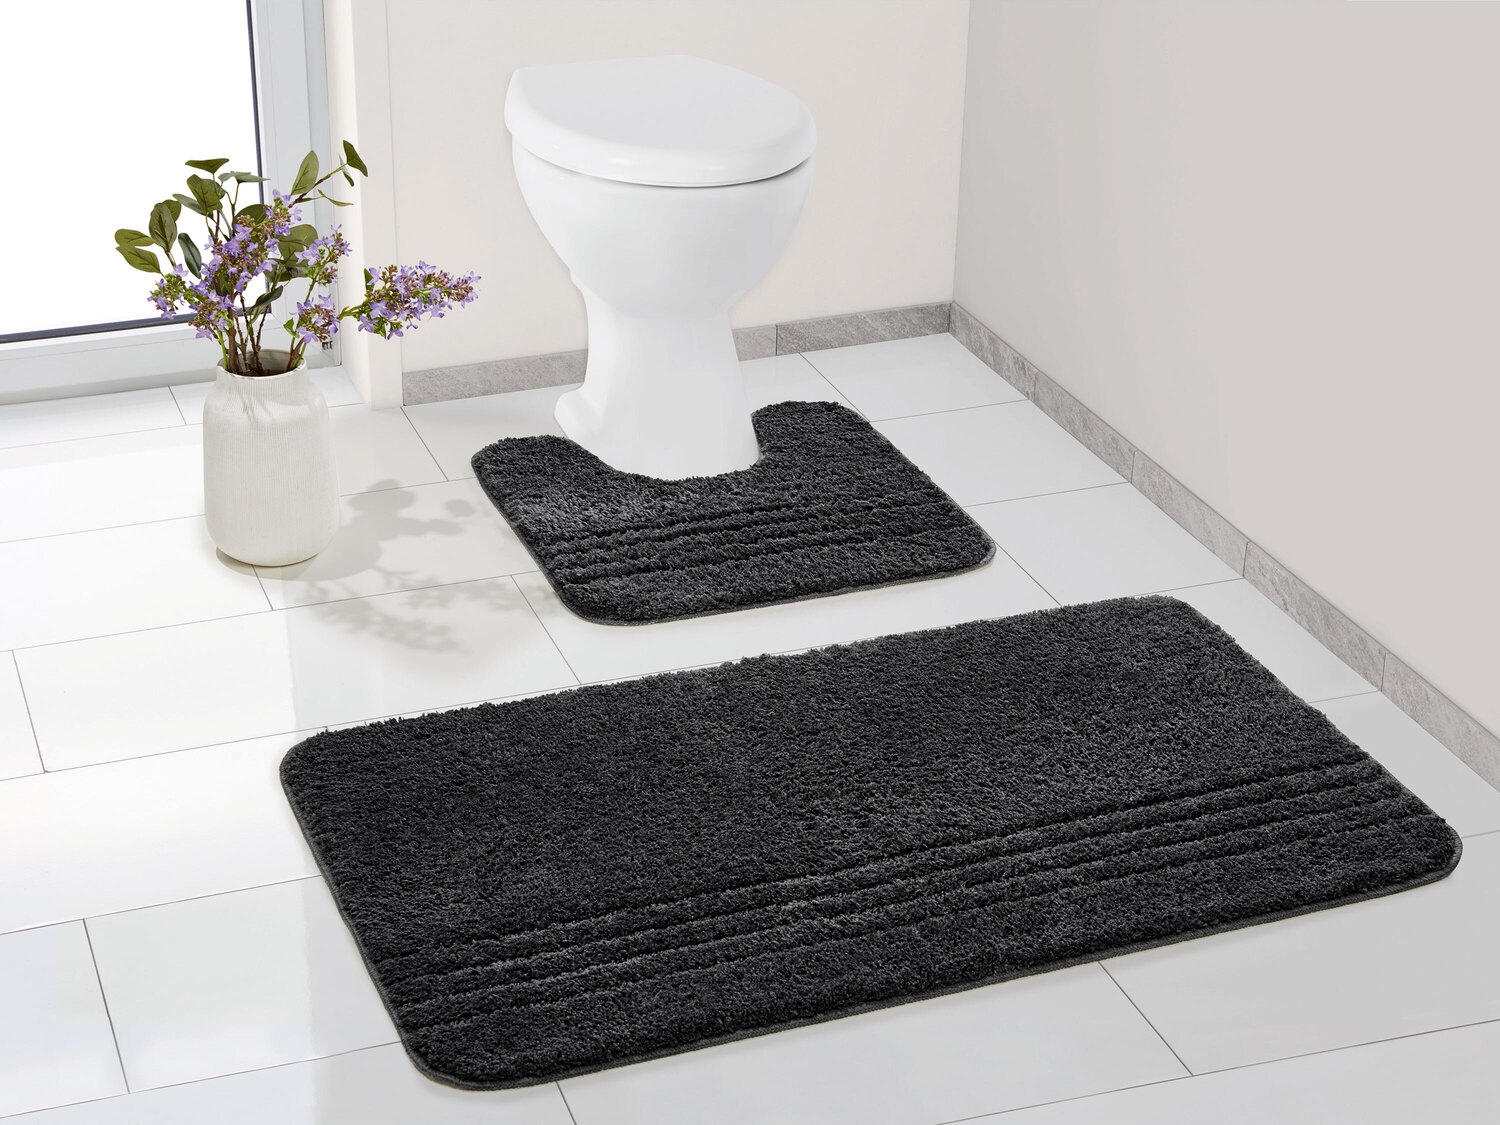 Zestaw dywaników łazienkowych Miomare, cena 39,99 PLN
pod WC stojące 
- antypoślizgowy ...